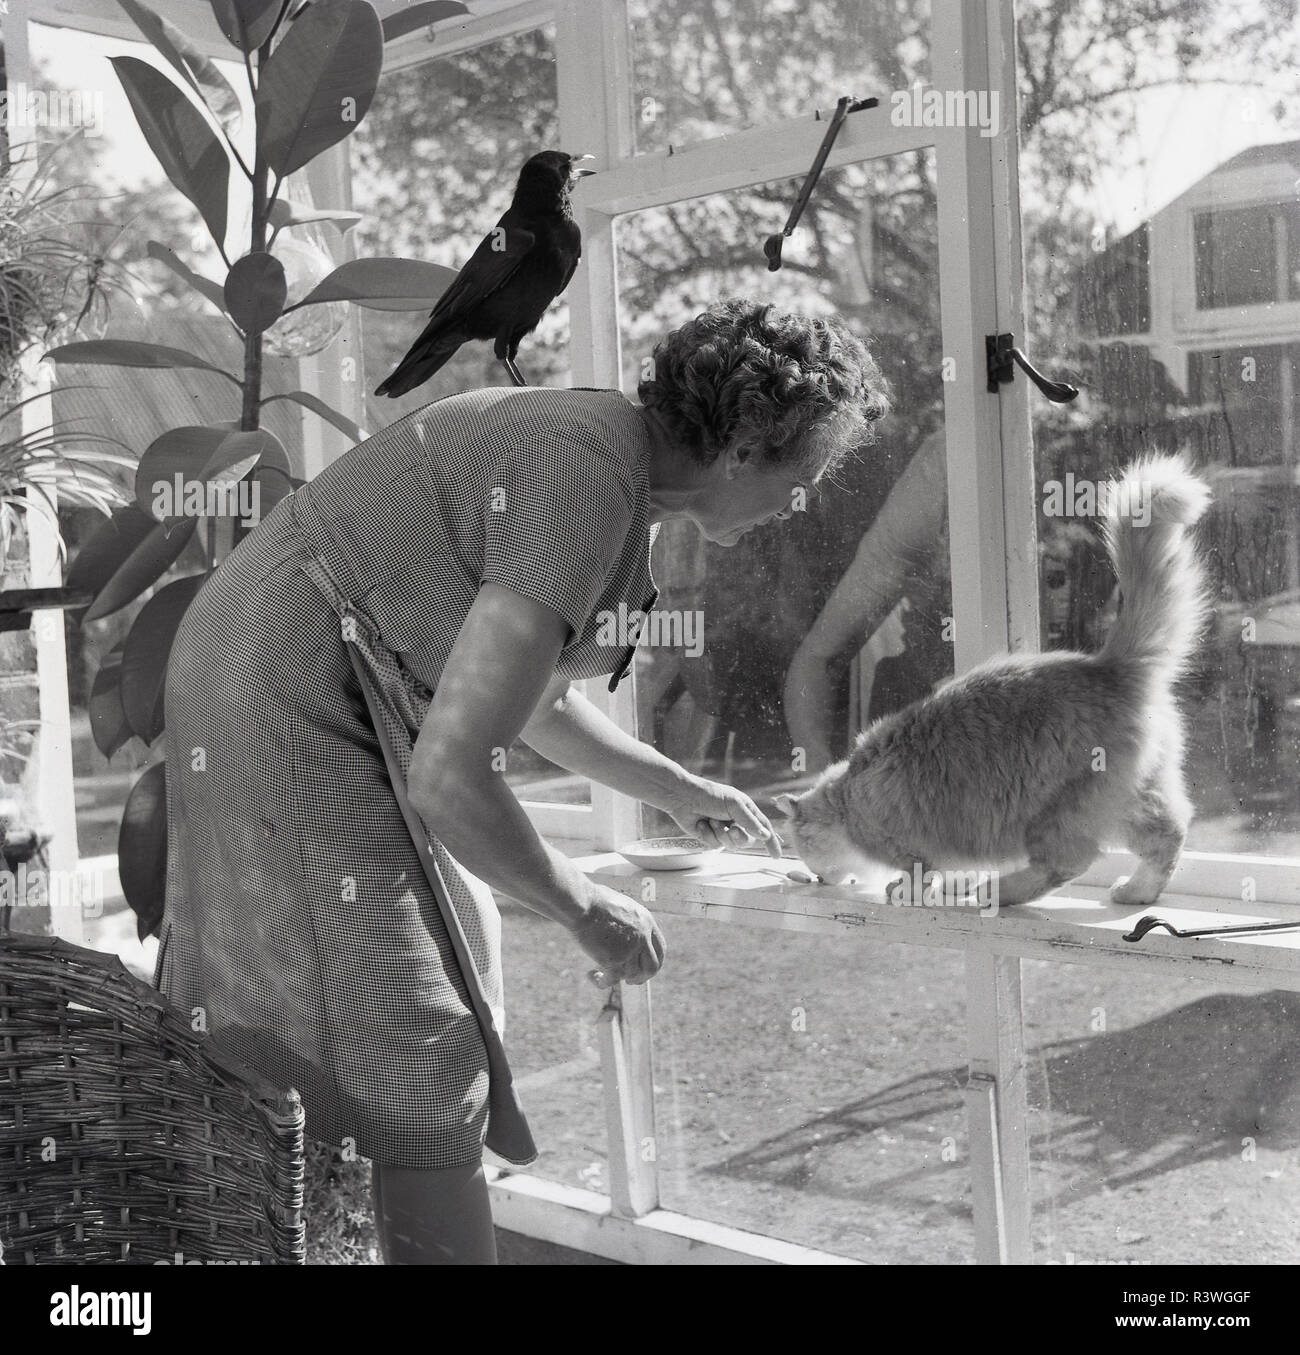 1965, una signora anziana alimentando la sua auto dalla finestra di una veranda o conservatorio, mentre il suo animale domestico bird, un rook, è appollaiato sulla sua schiena, Inghilterra, Regno Unito. Foto Stock